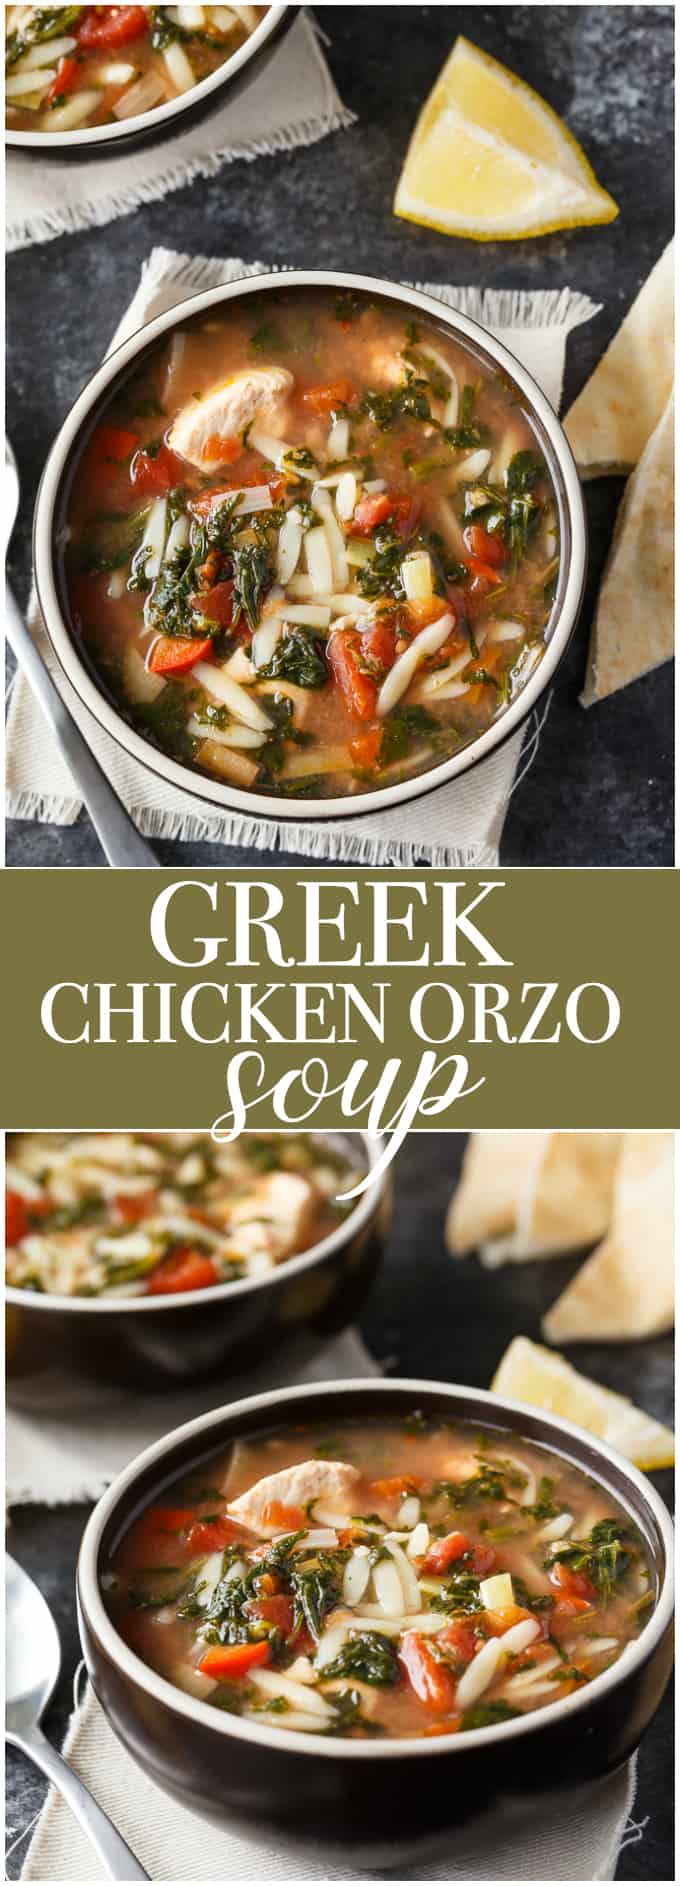 https://www.simplystacie.net/2017/10/greek-chicken-orzo-soup/